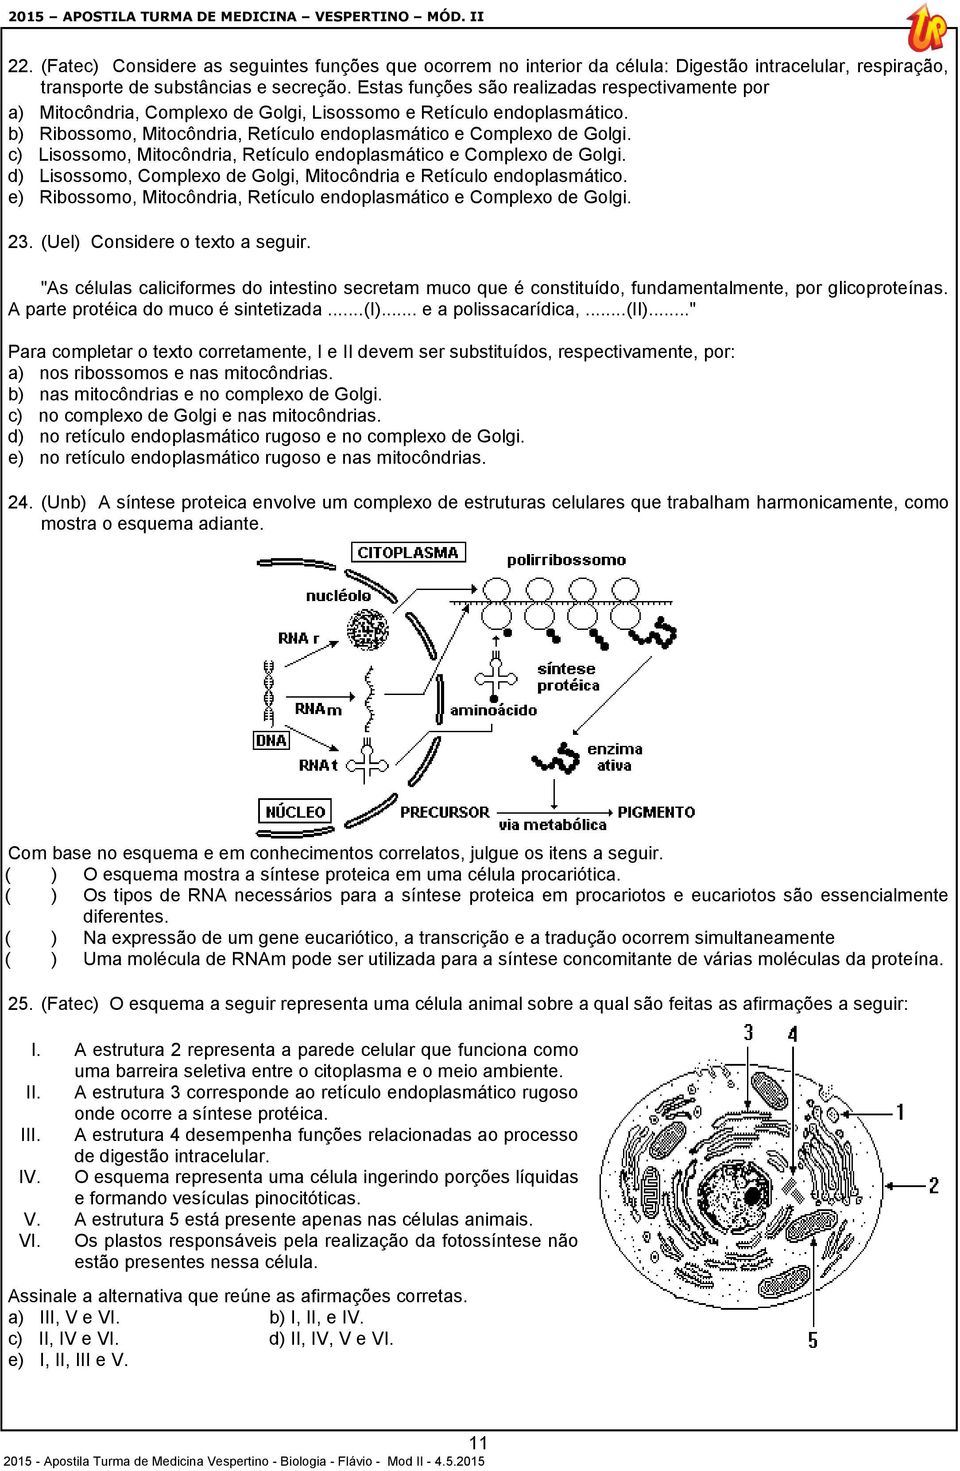 c) Lisossomo, Mitocôndria, Retículo endoplasmático e Complexo de Golgi. d) Lisossomo, Complexo de Golgi, Mitocôndria e Retículo endoplasmático.